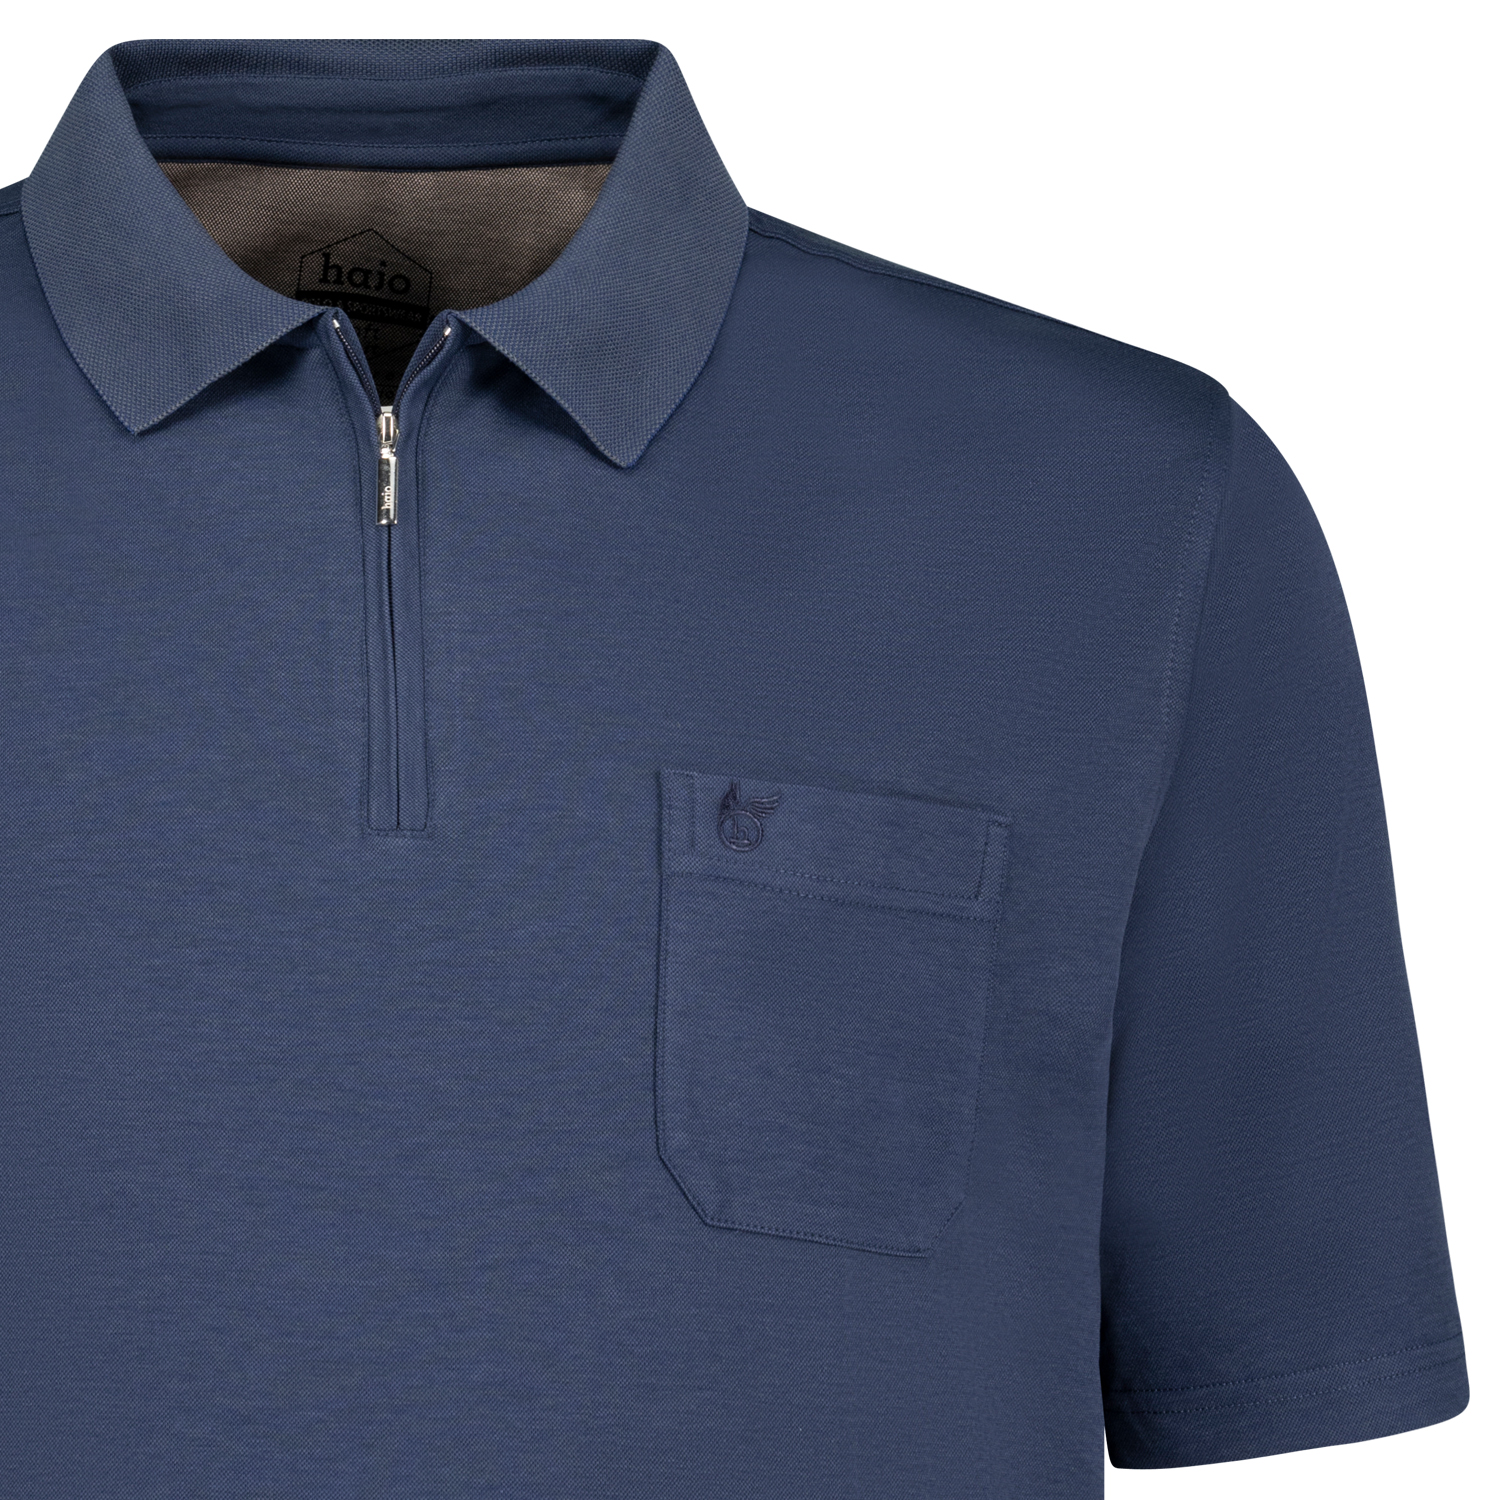 Kurzärmliges Herren Poloshirt "Softknit" von hajo in marineblau meliert bis Übergröße 6XL